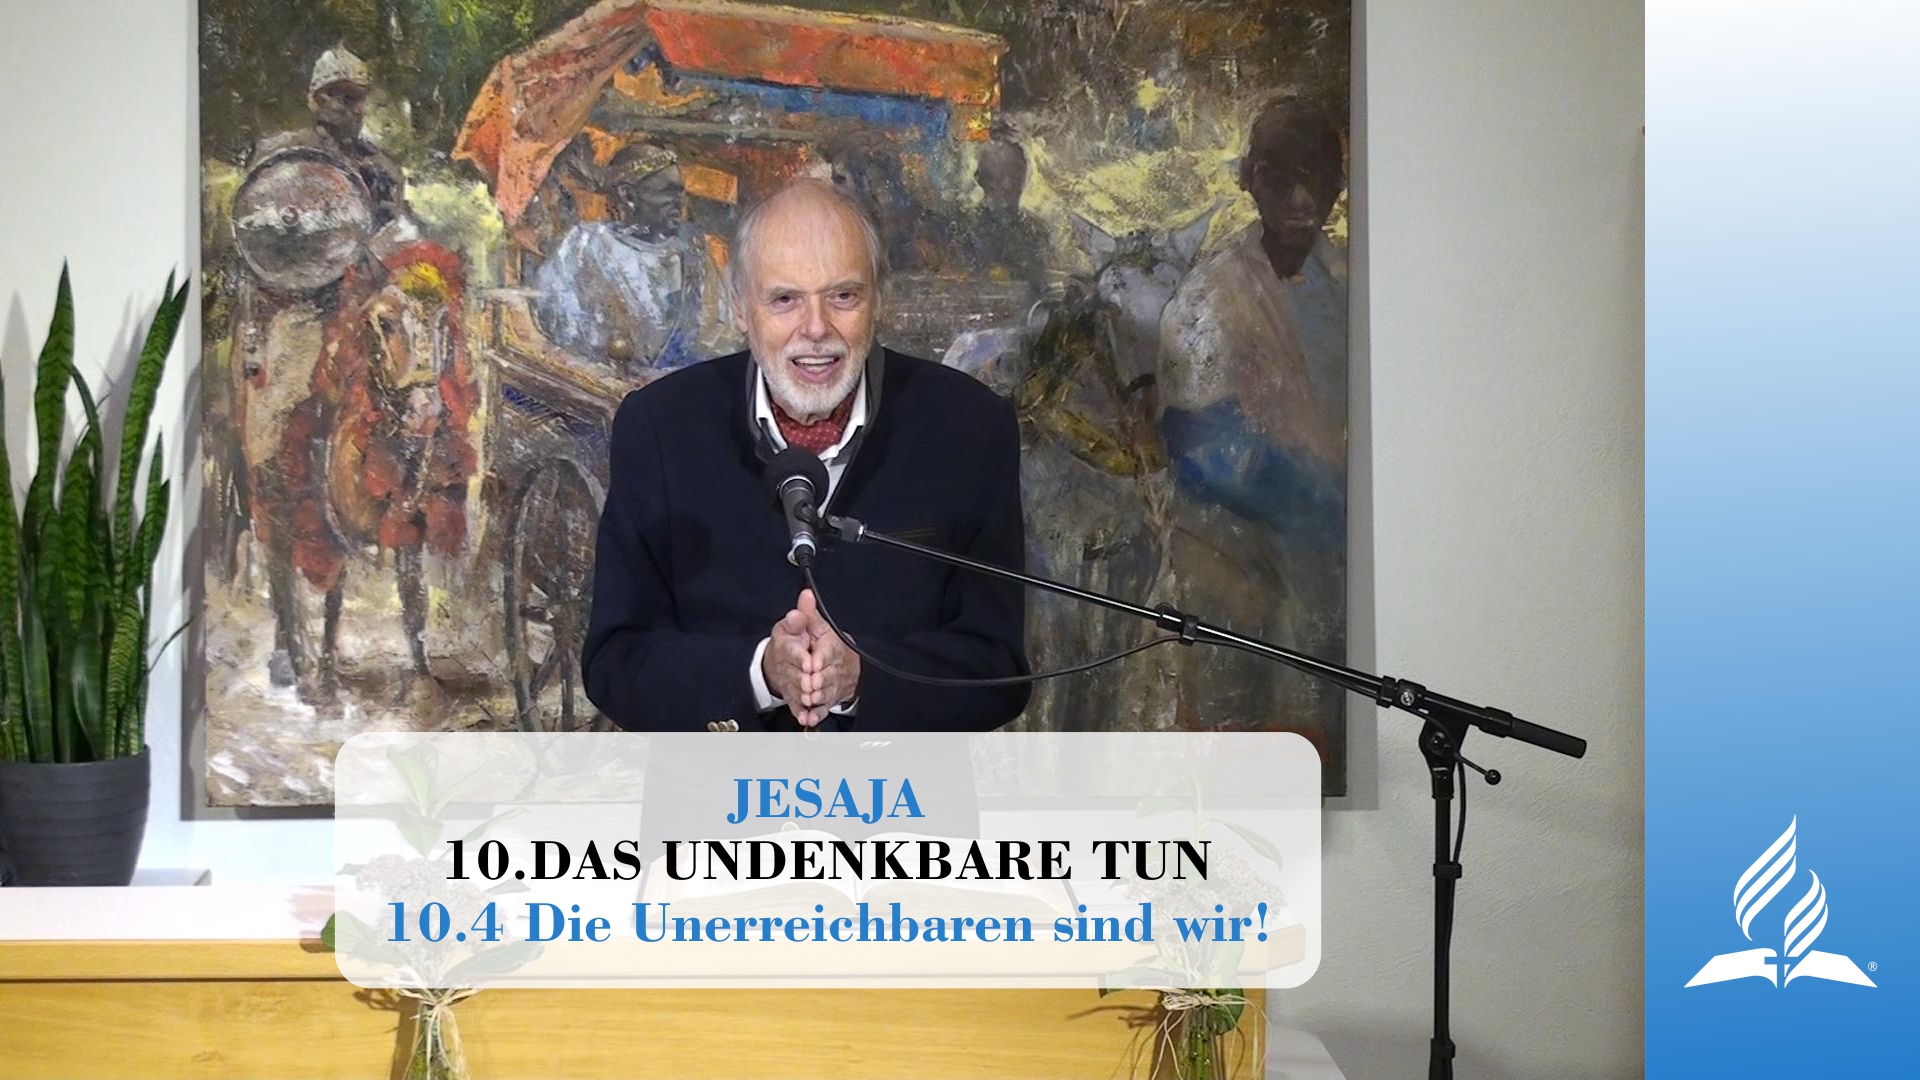 10.4 Die Unerreichbaren sind wir! – DAS UNDENKBARE TUN | Pastor Mag. Kurt Piesslinger